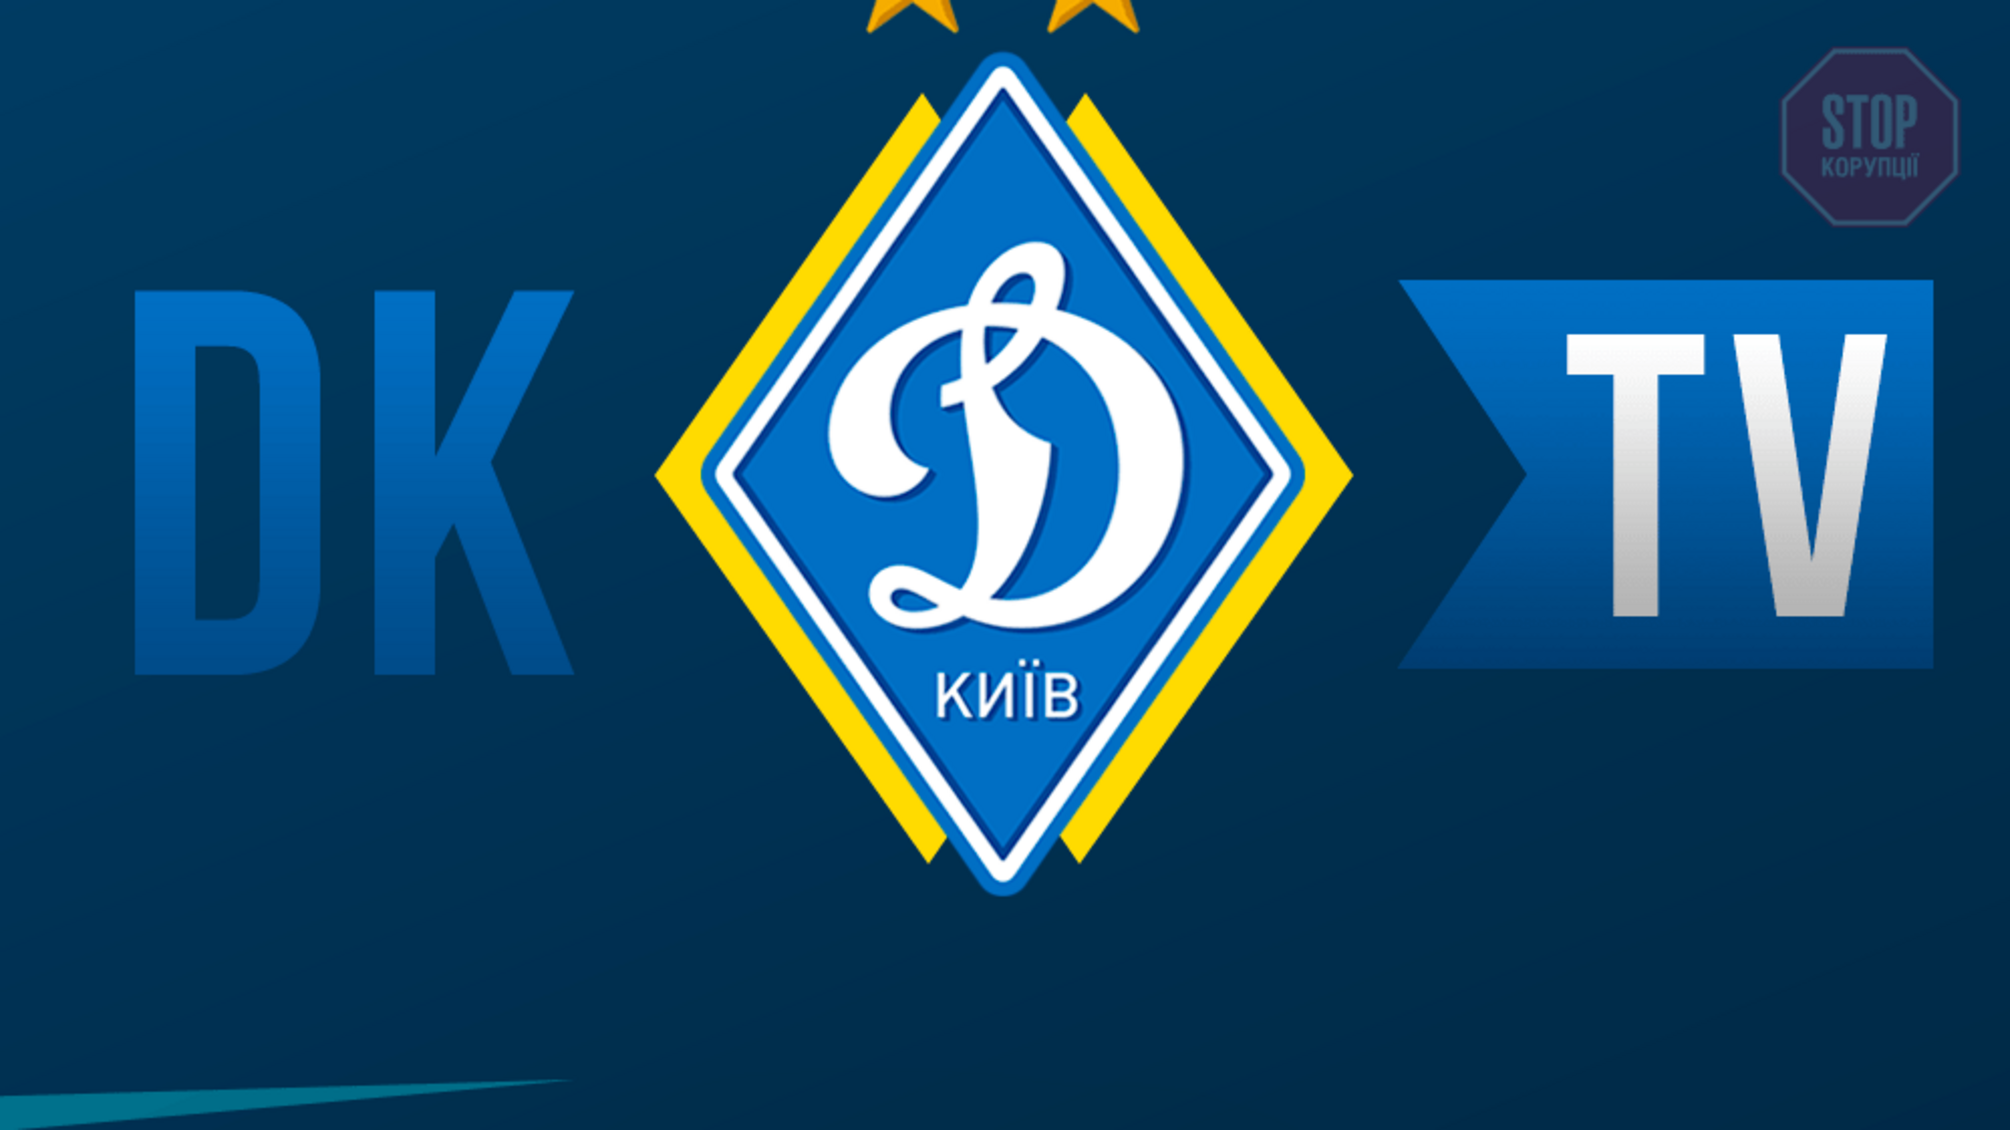 Футбольна команда “Динамо” анонсувала запуск власного телеканалу 